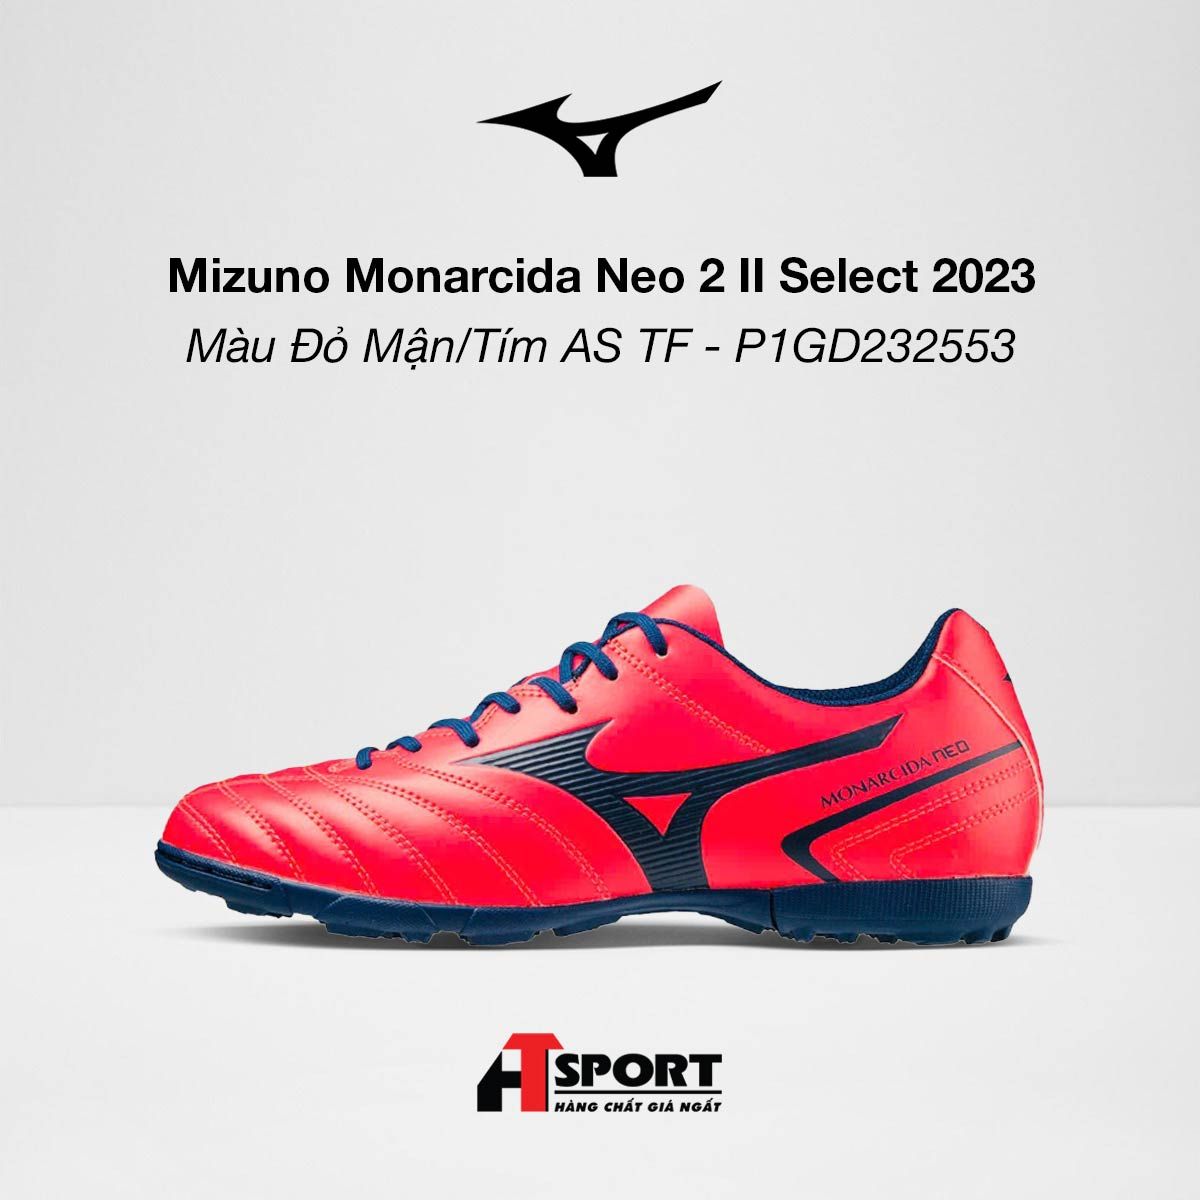  Mizuno Monarcida Neo II Select Màu Đỏ Mận/Tím AS TF 2023 - P1GD232553 